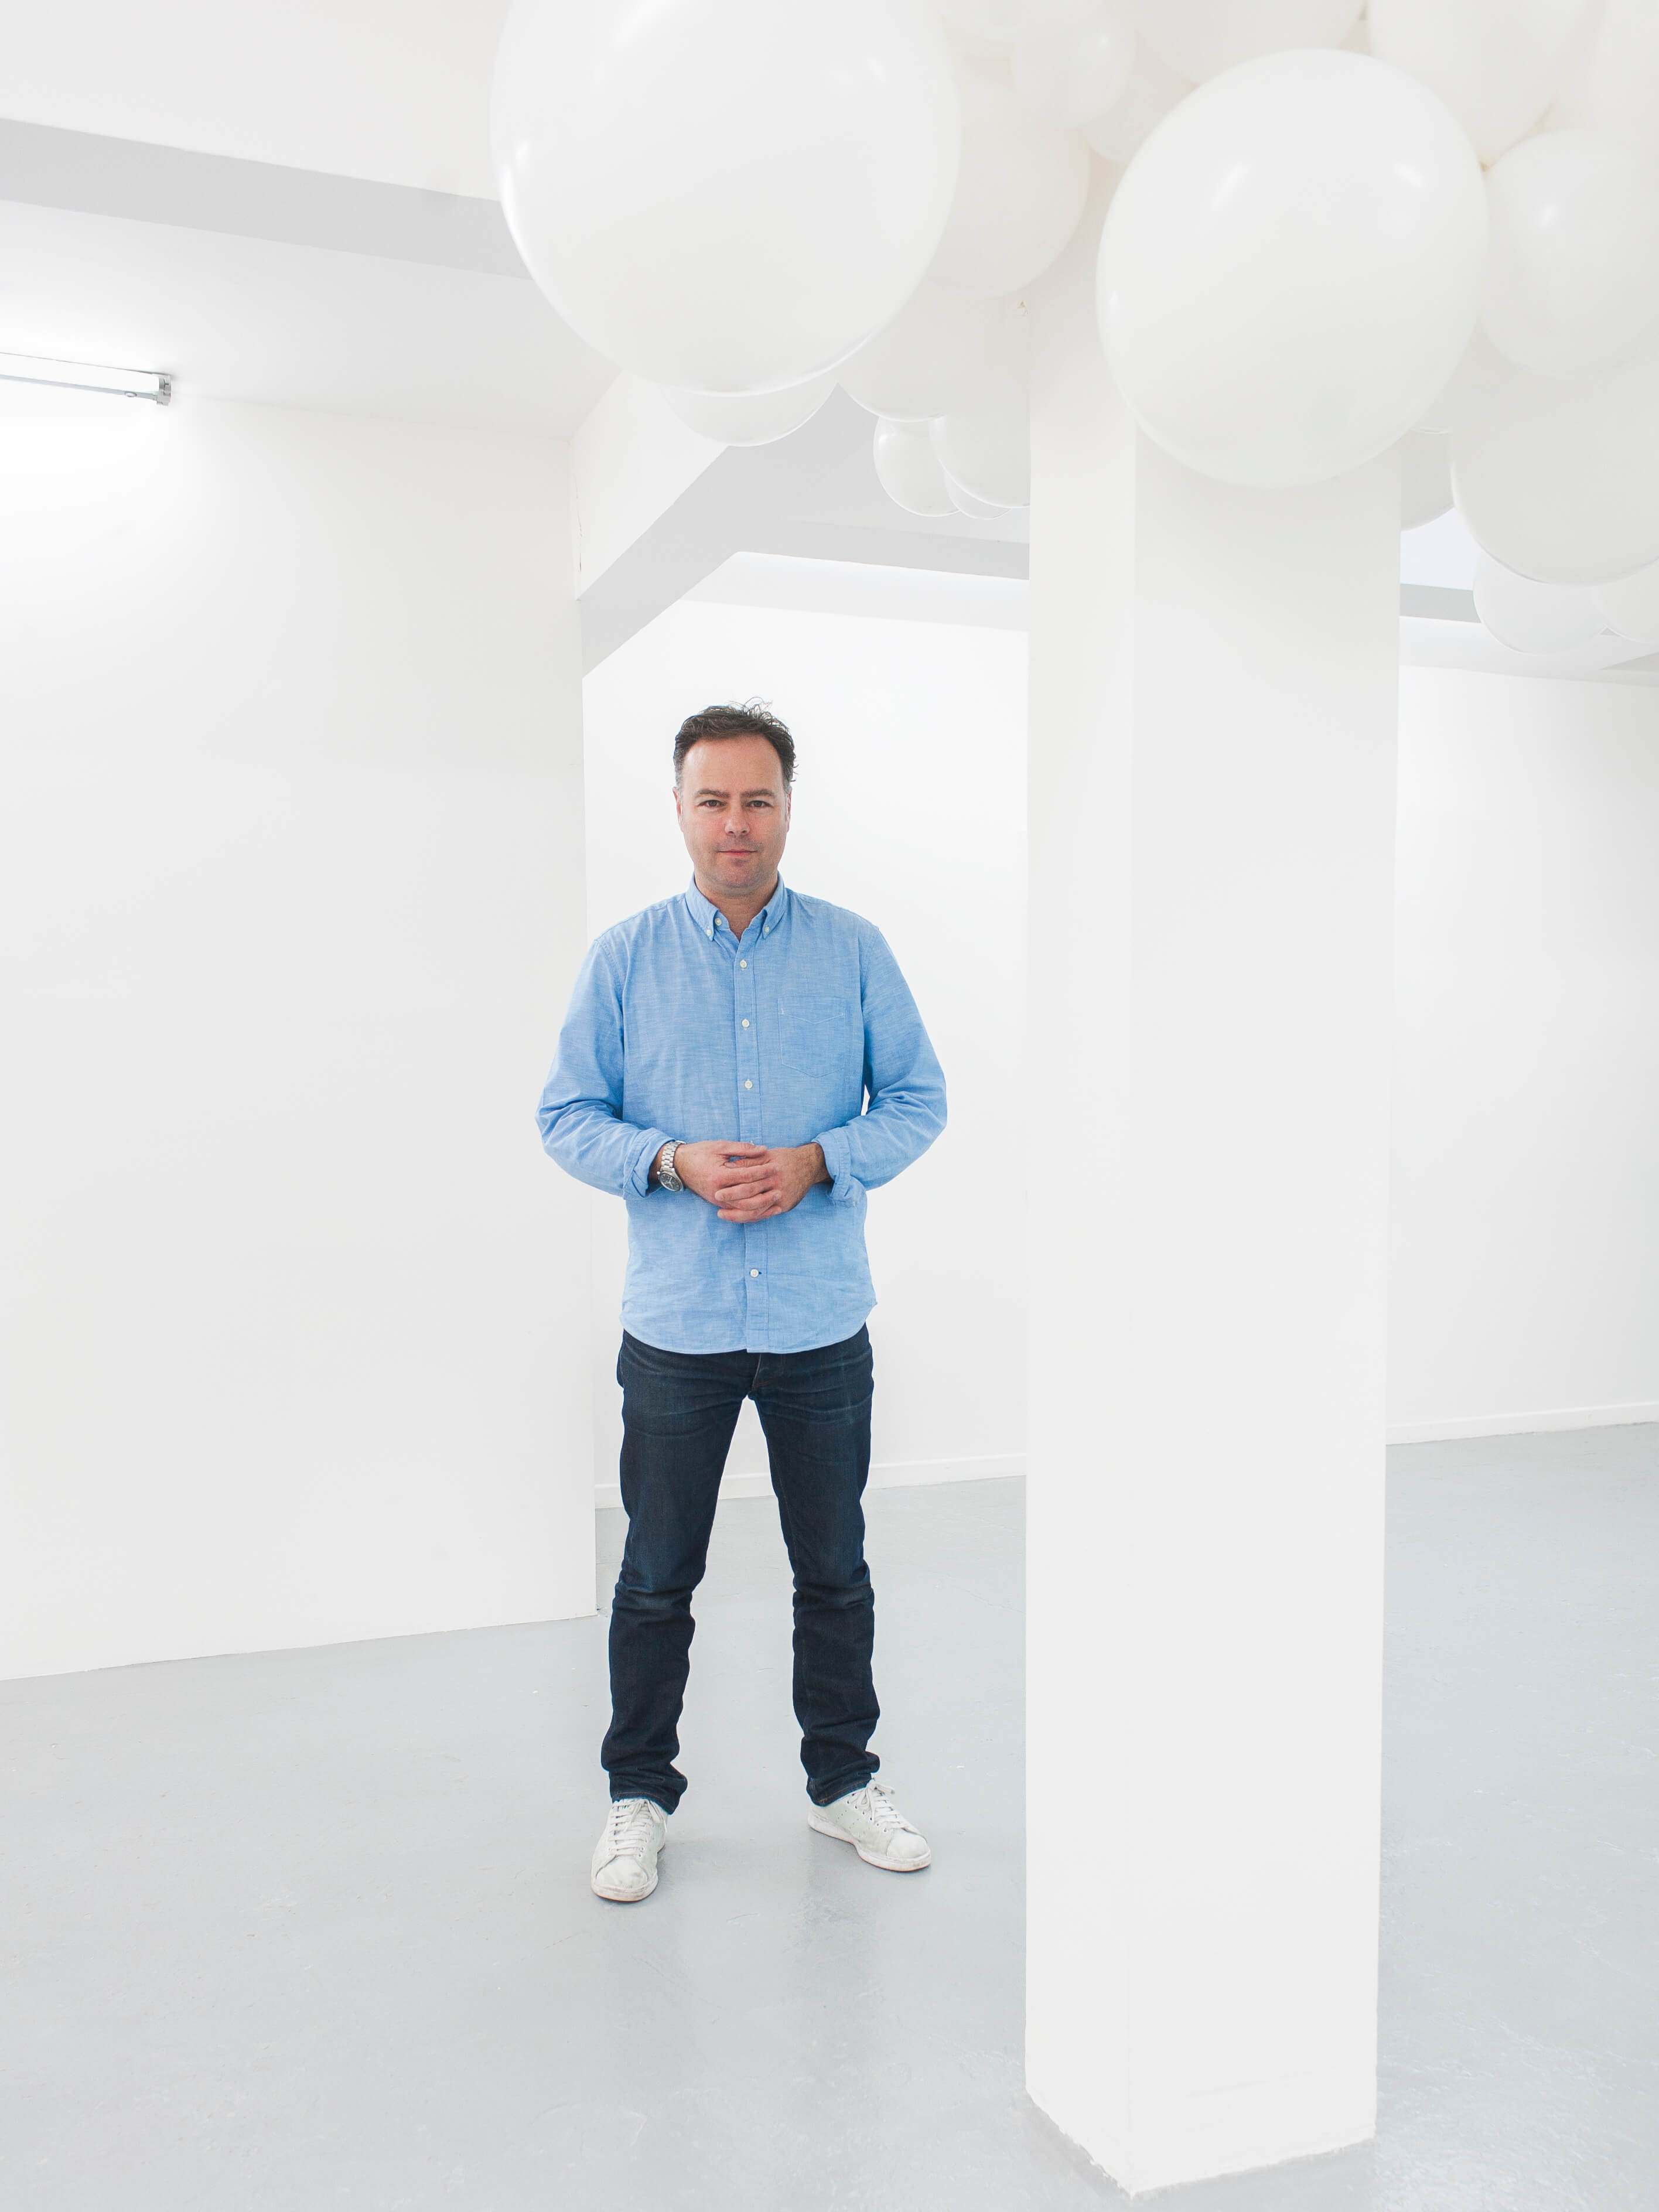 アーティストのCharles Petillonはバルーンを特徴とした芸術作品で知られています。2017年にミラノで開催されたSuperDesignショーでは、Sunbrellaファブリックを使った彼のインスタレーションが呼び物となりました。